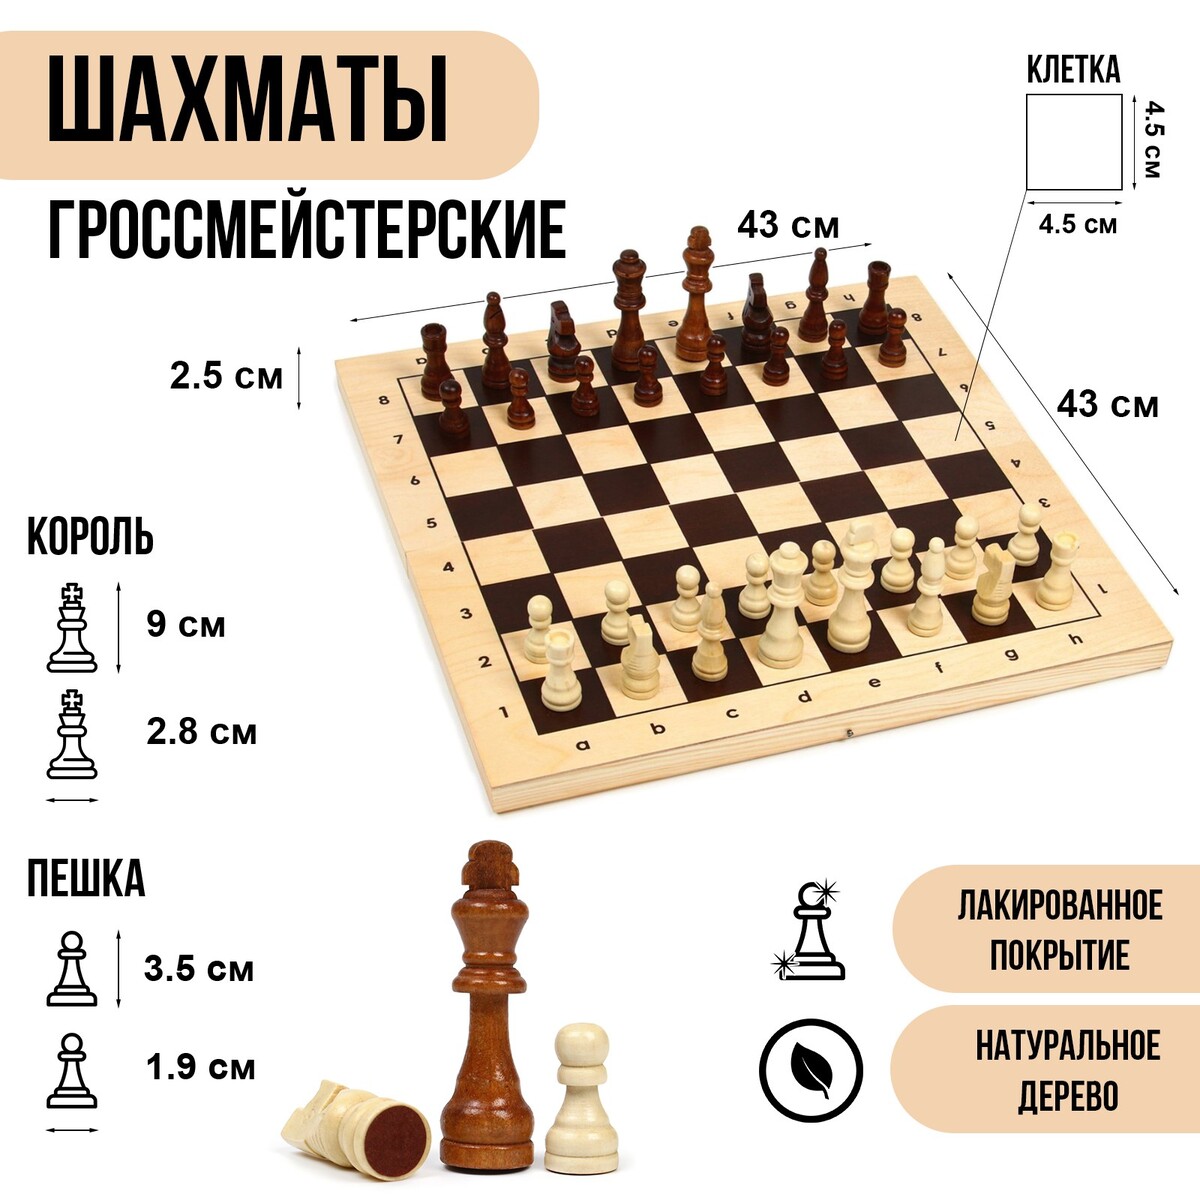 Шахматы деревянные гроссмейстерские, турнирные 43 х 43 см, король h-9 см, пешка h-3.5 см титановый король